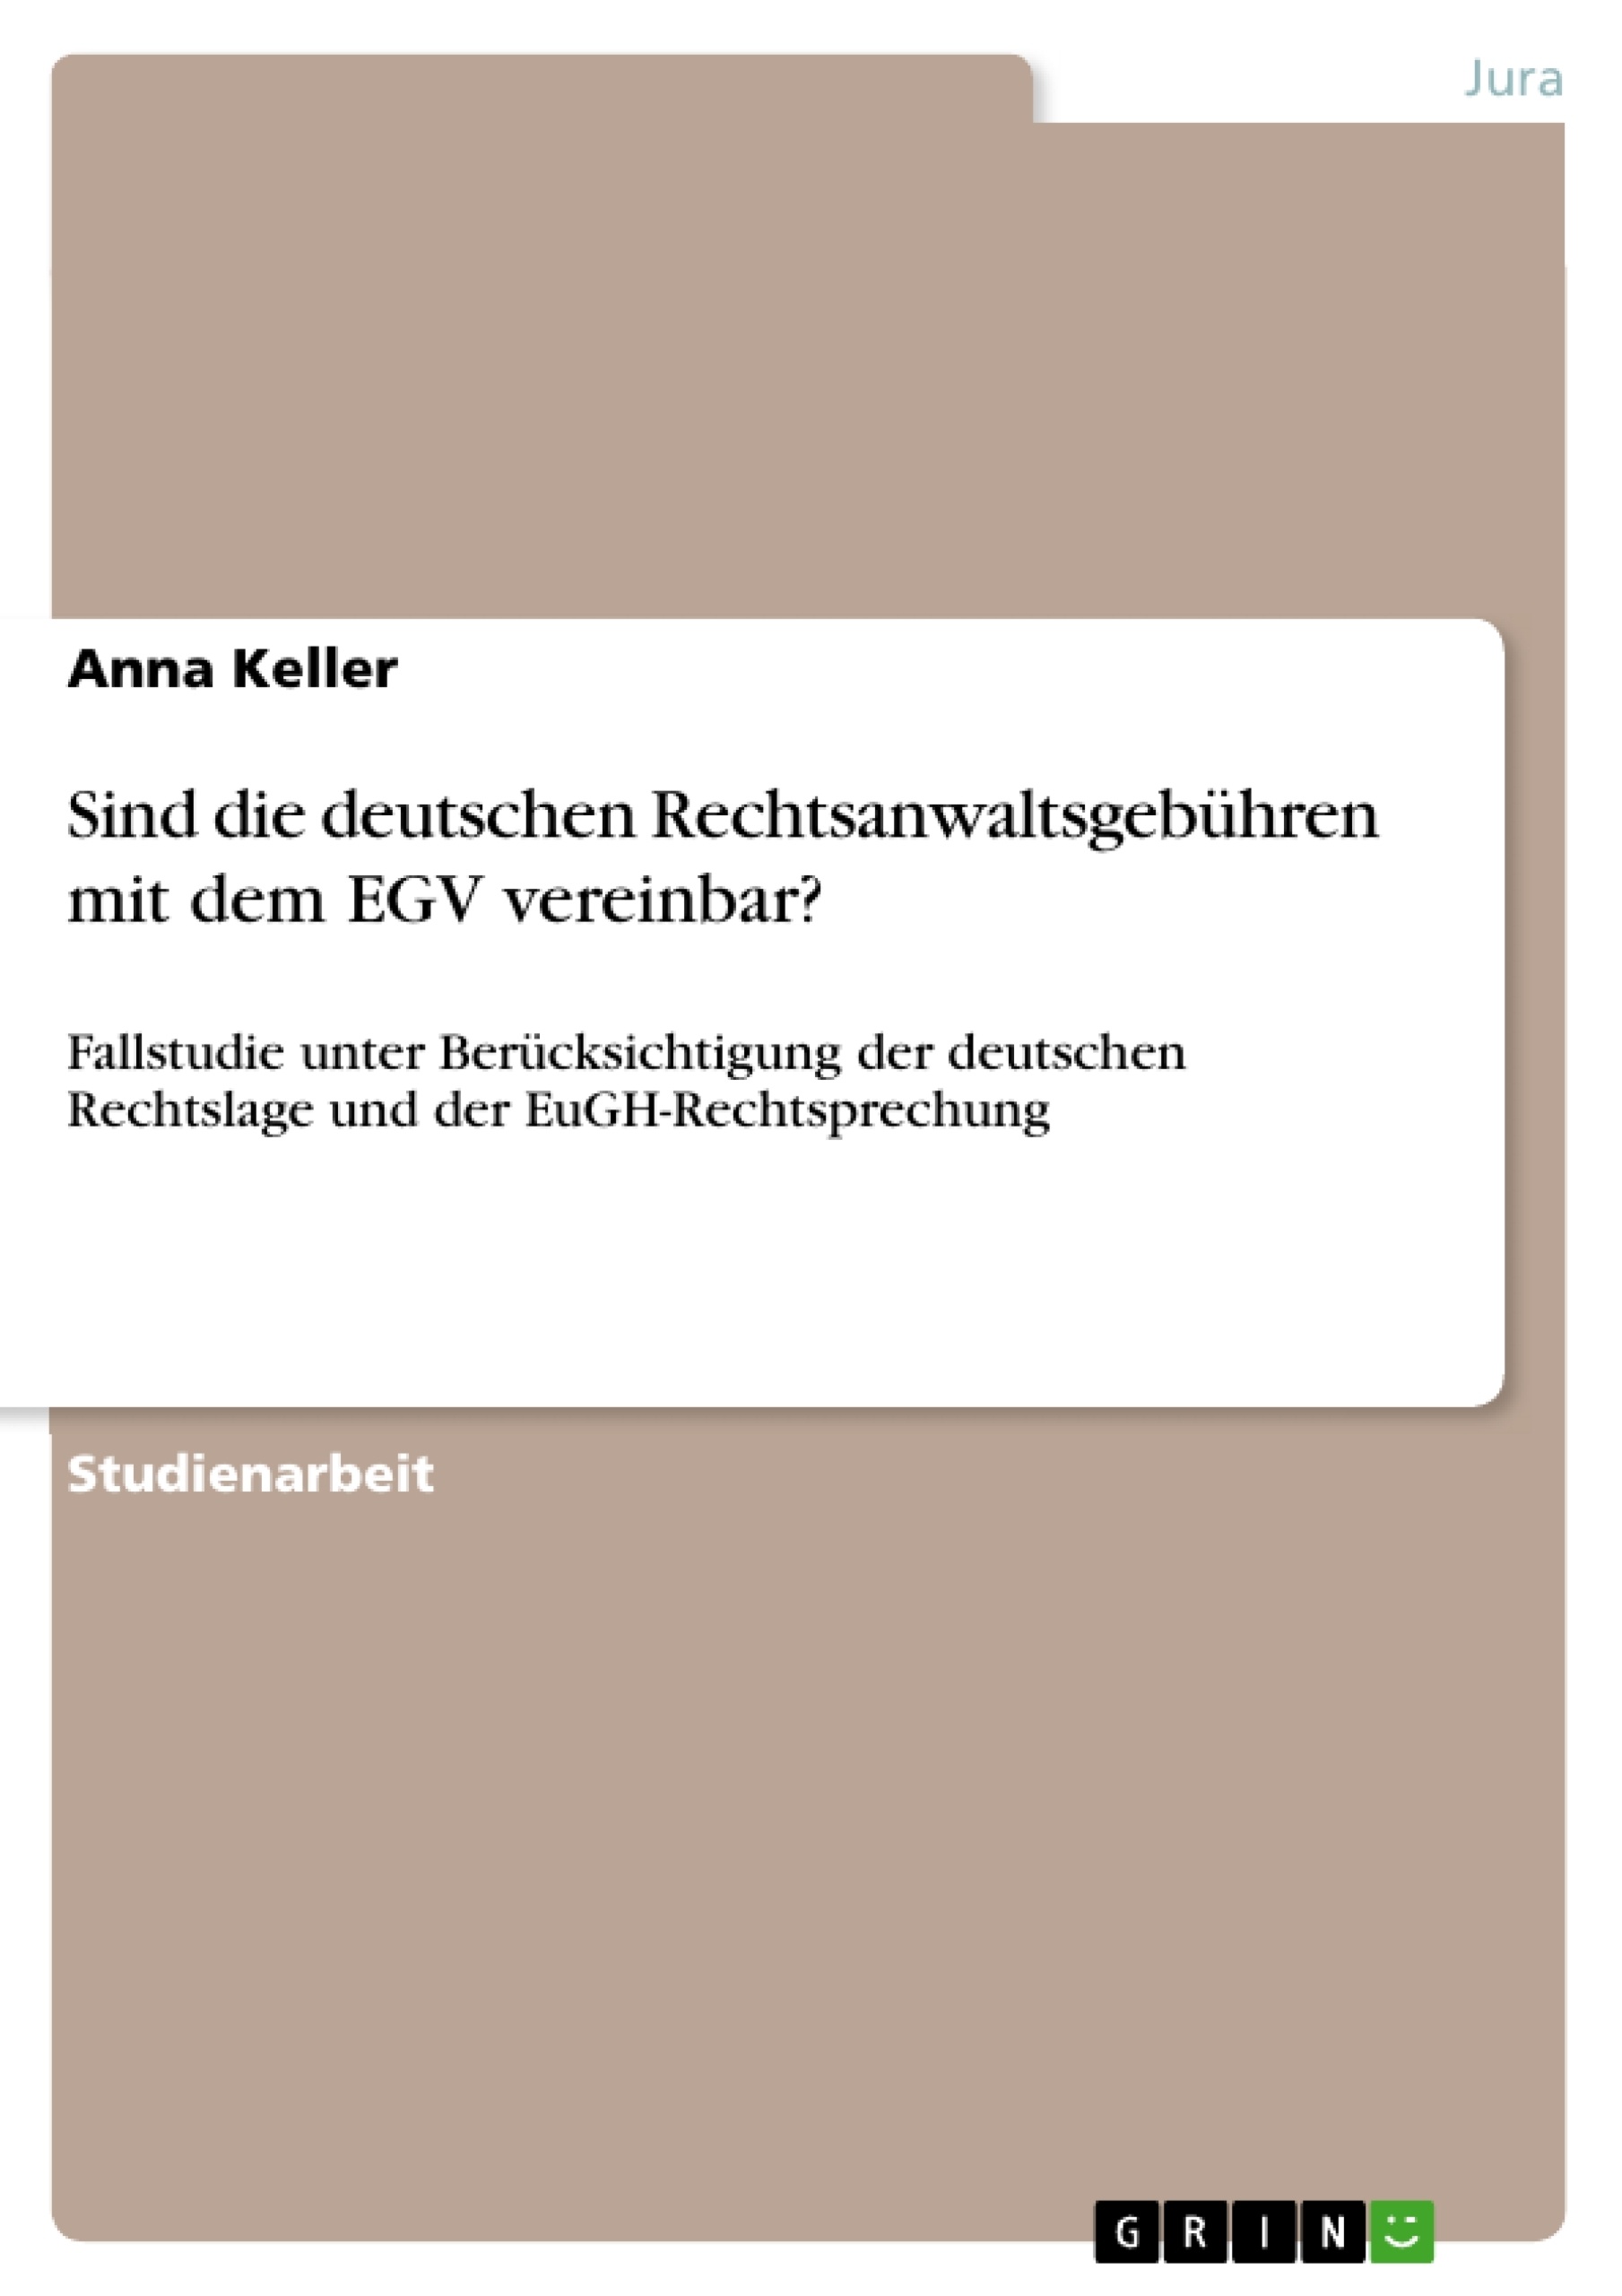 Title: Sind die deutschen Rechtsanwaltsgebühren mit dem EGV vereinbar?